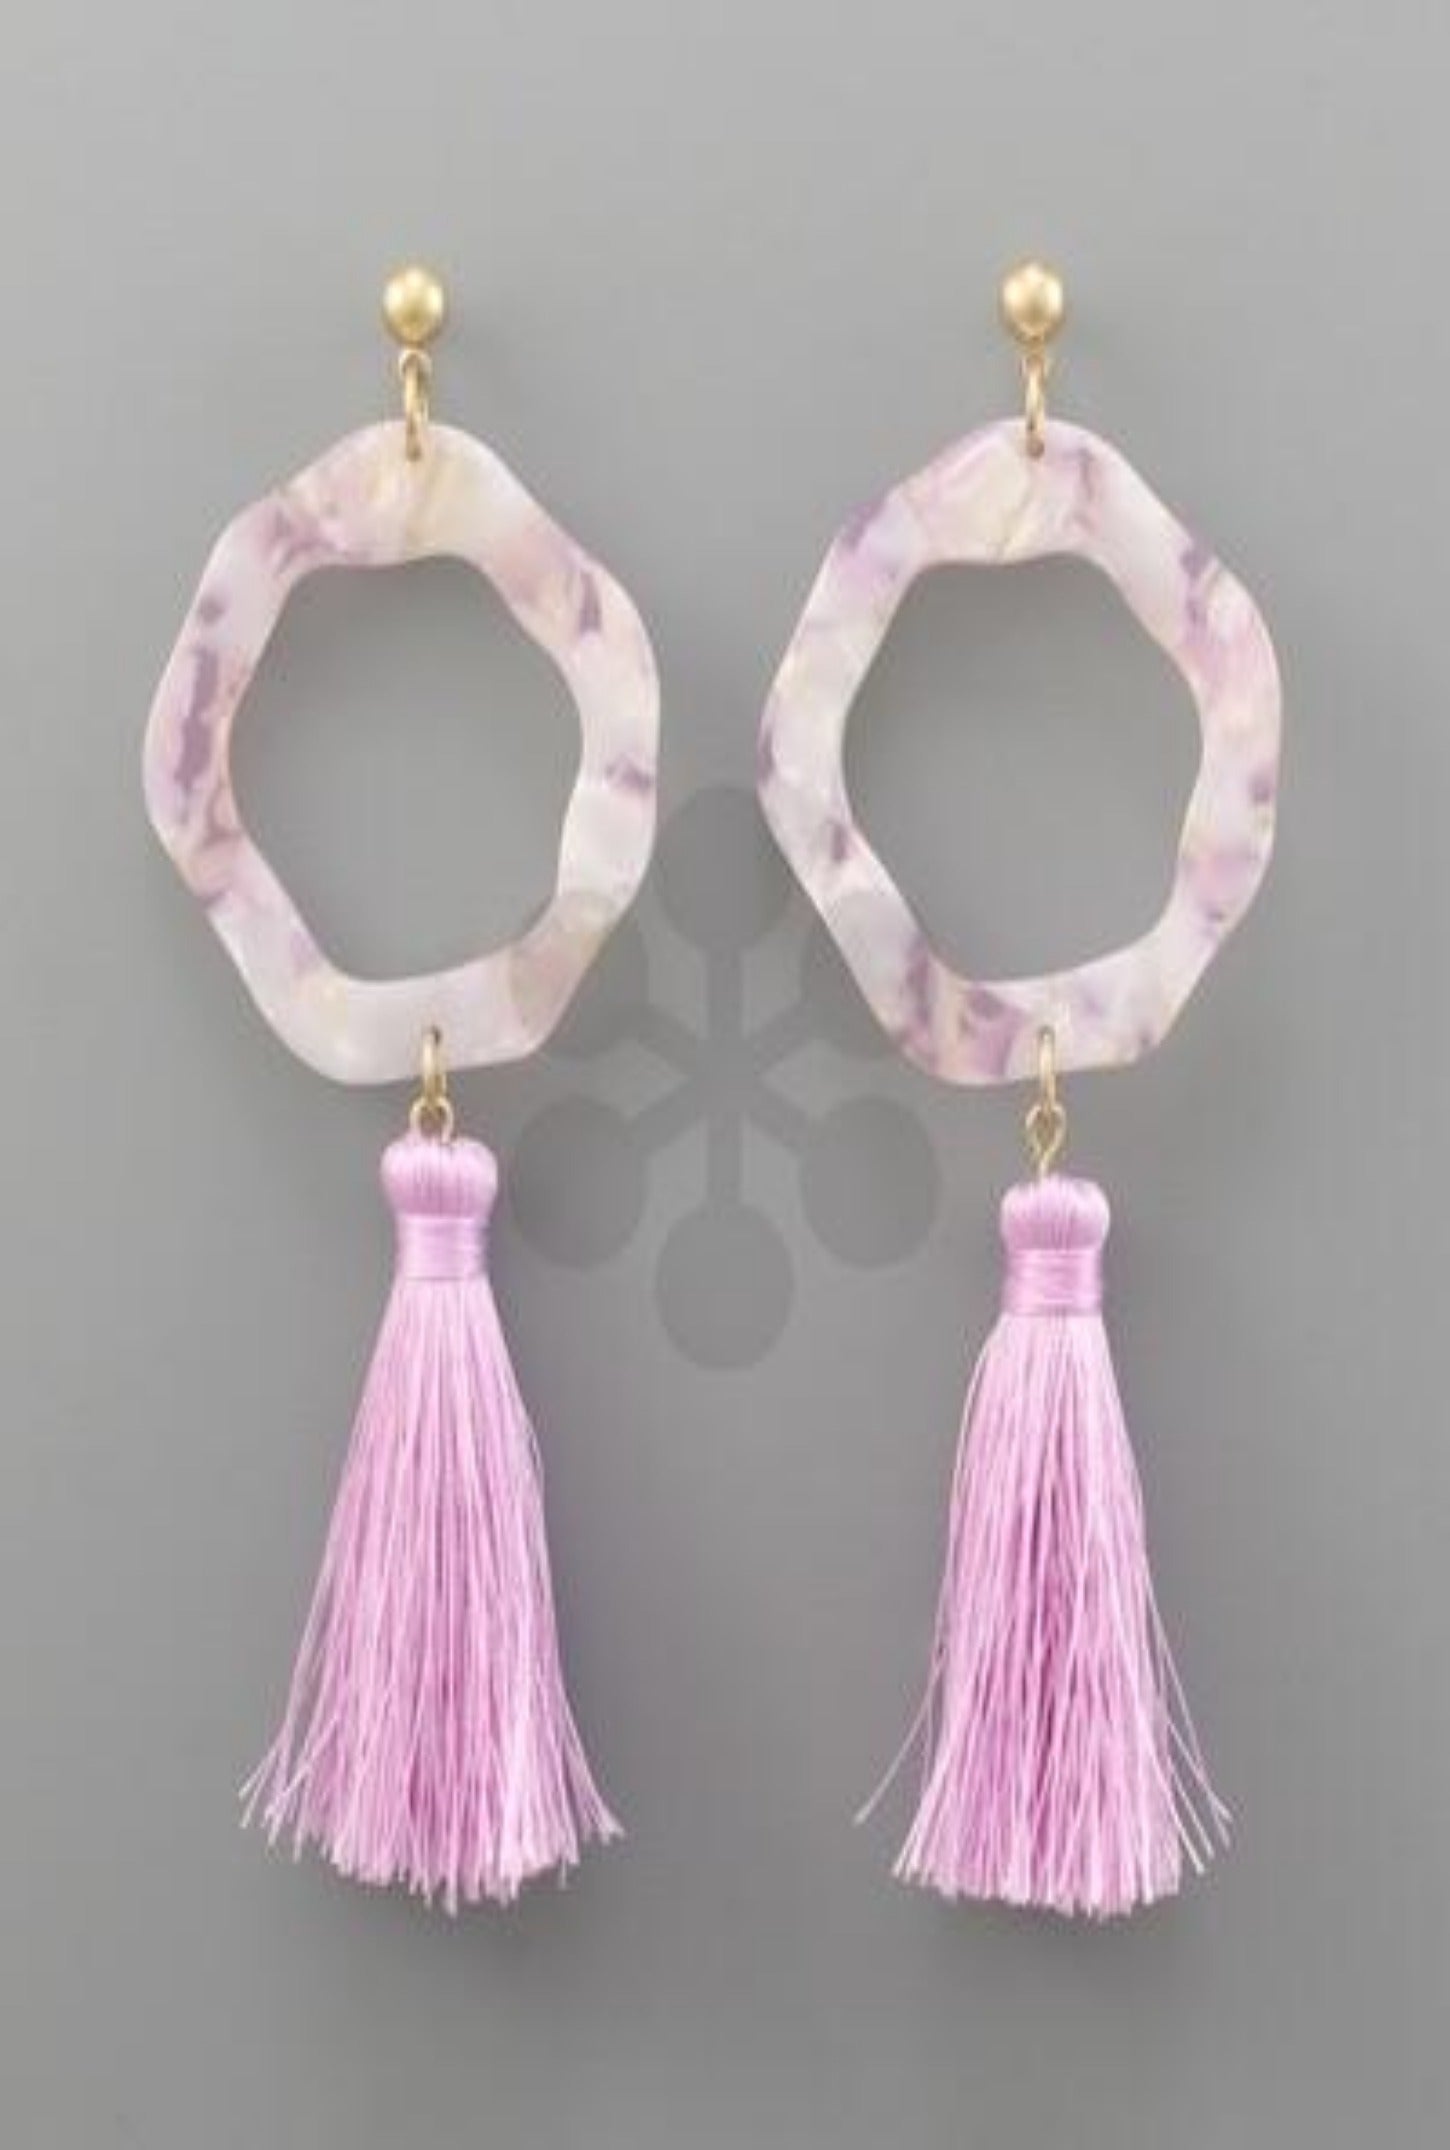 Purple Acrylic Ring Tassel Earrings - Bellamie Boutique